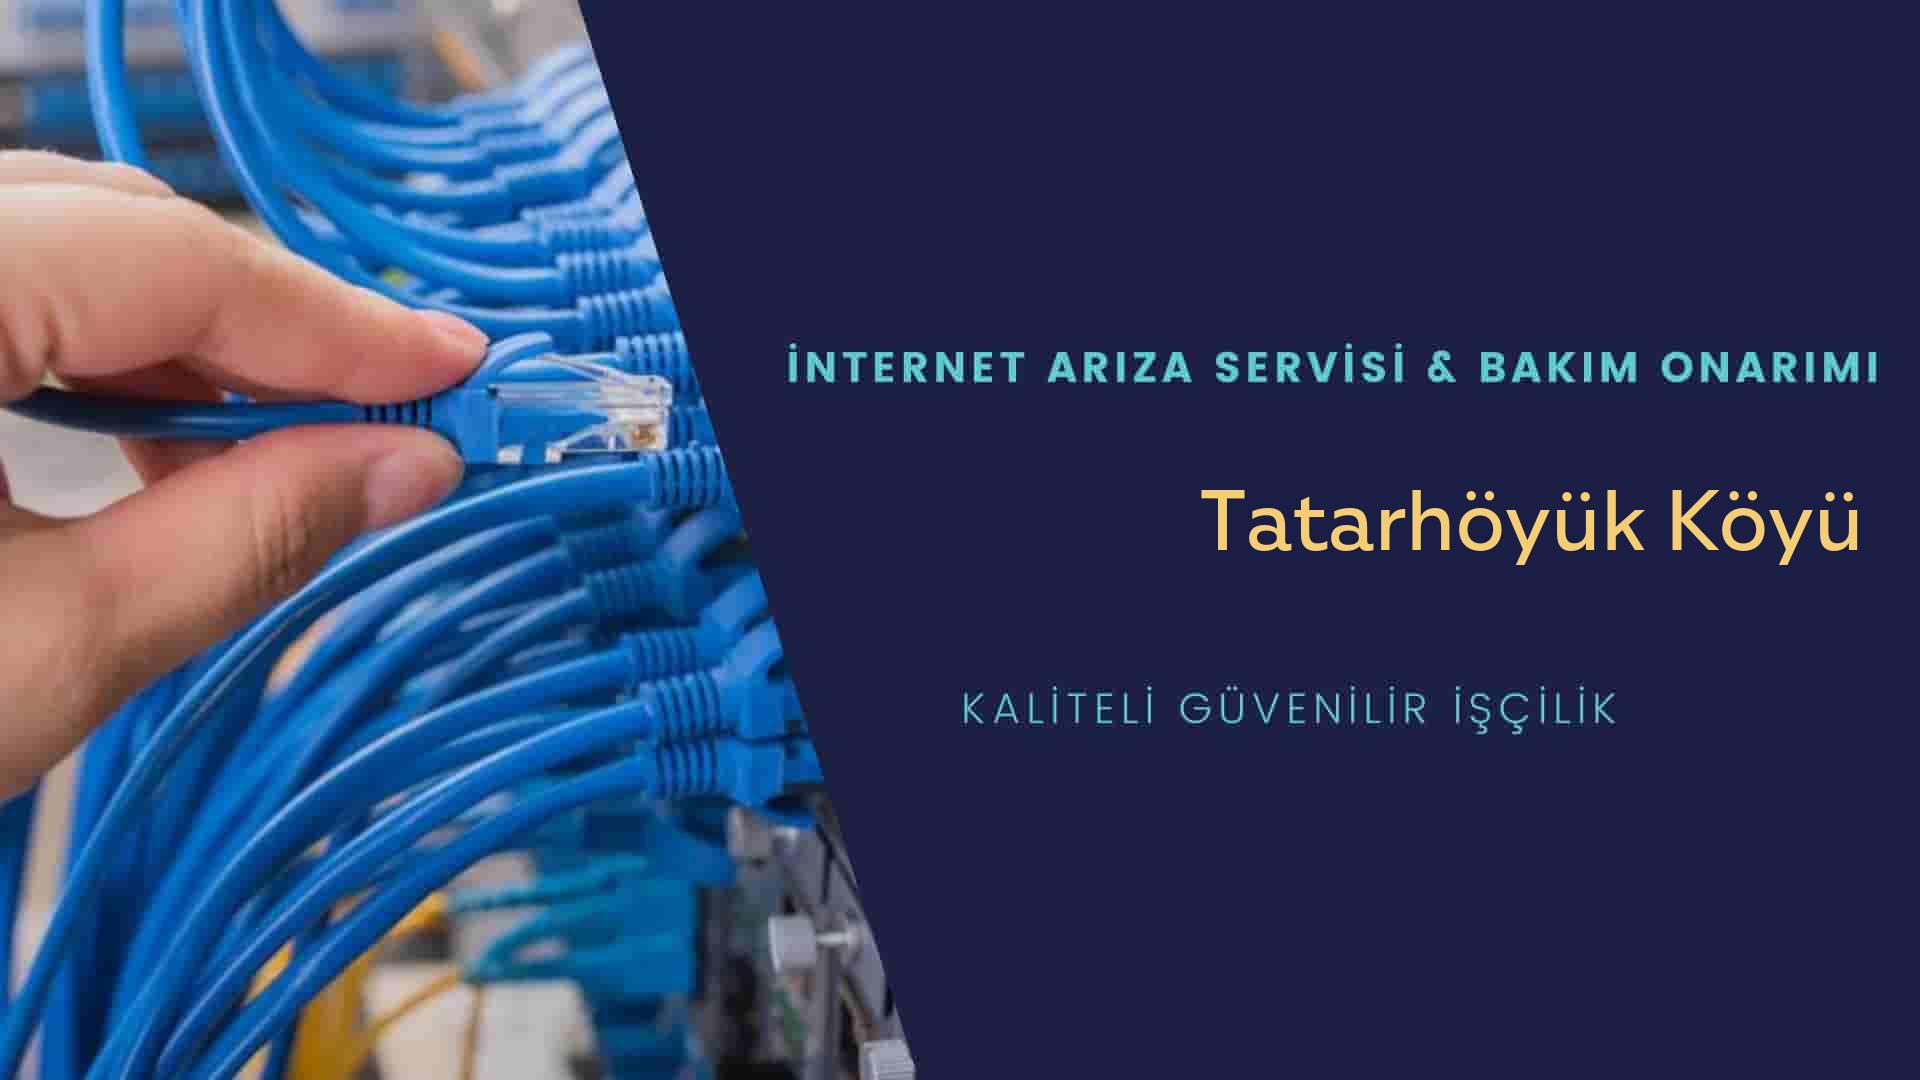 Tatarhöyük Köyü internet kablosu çekimi yapan yerler veya elektrikçiler mi? arıyorsunuz doğru yerdesiniz o zaman sizlere 7/24 yardımcı olacak profesyonel ustalarımız bir telefon kadar yakındır size.